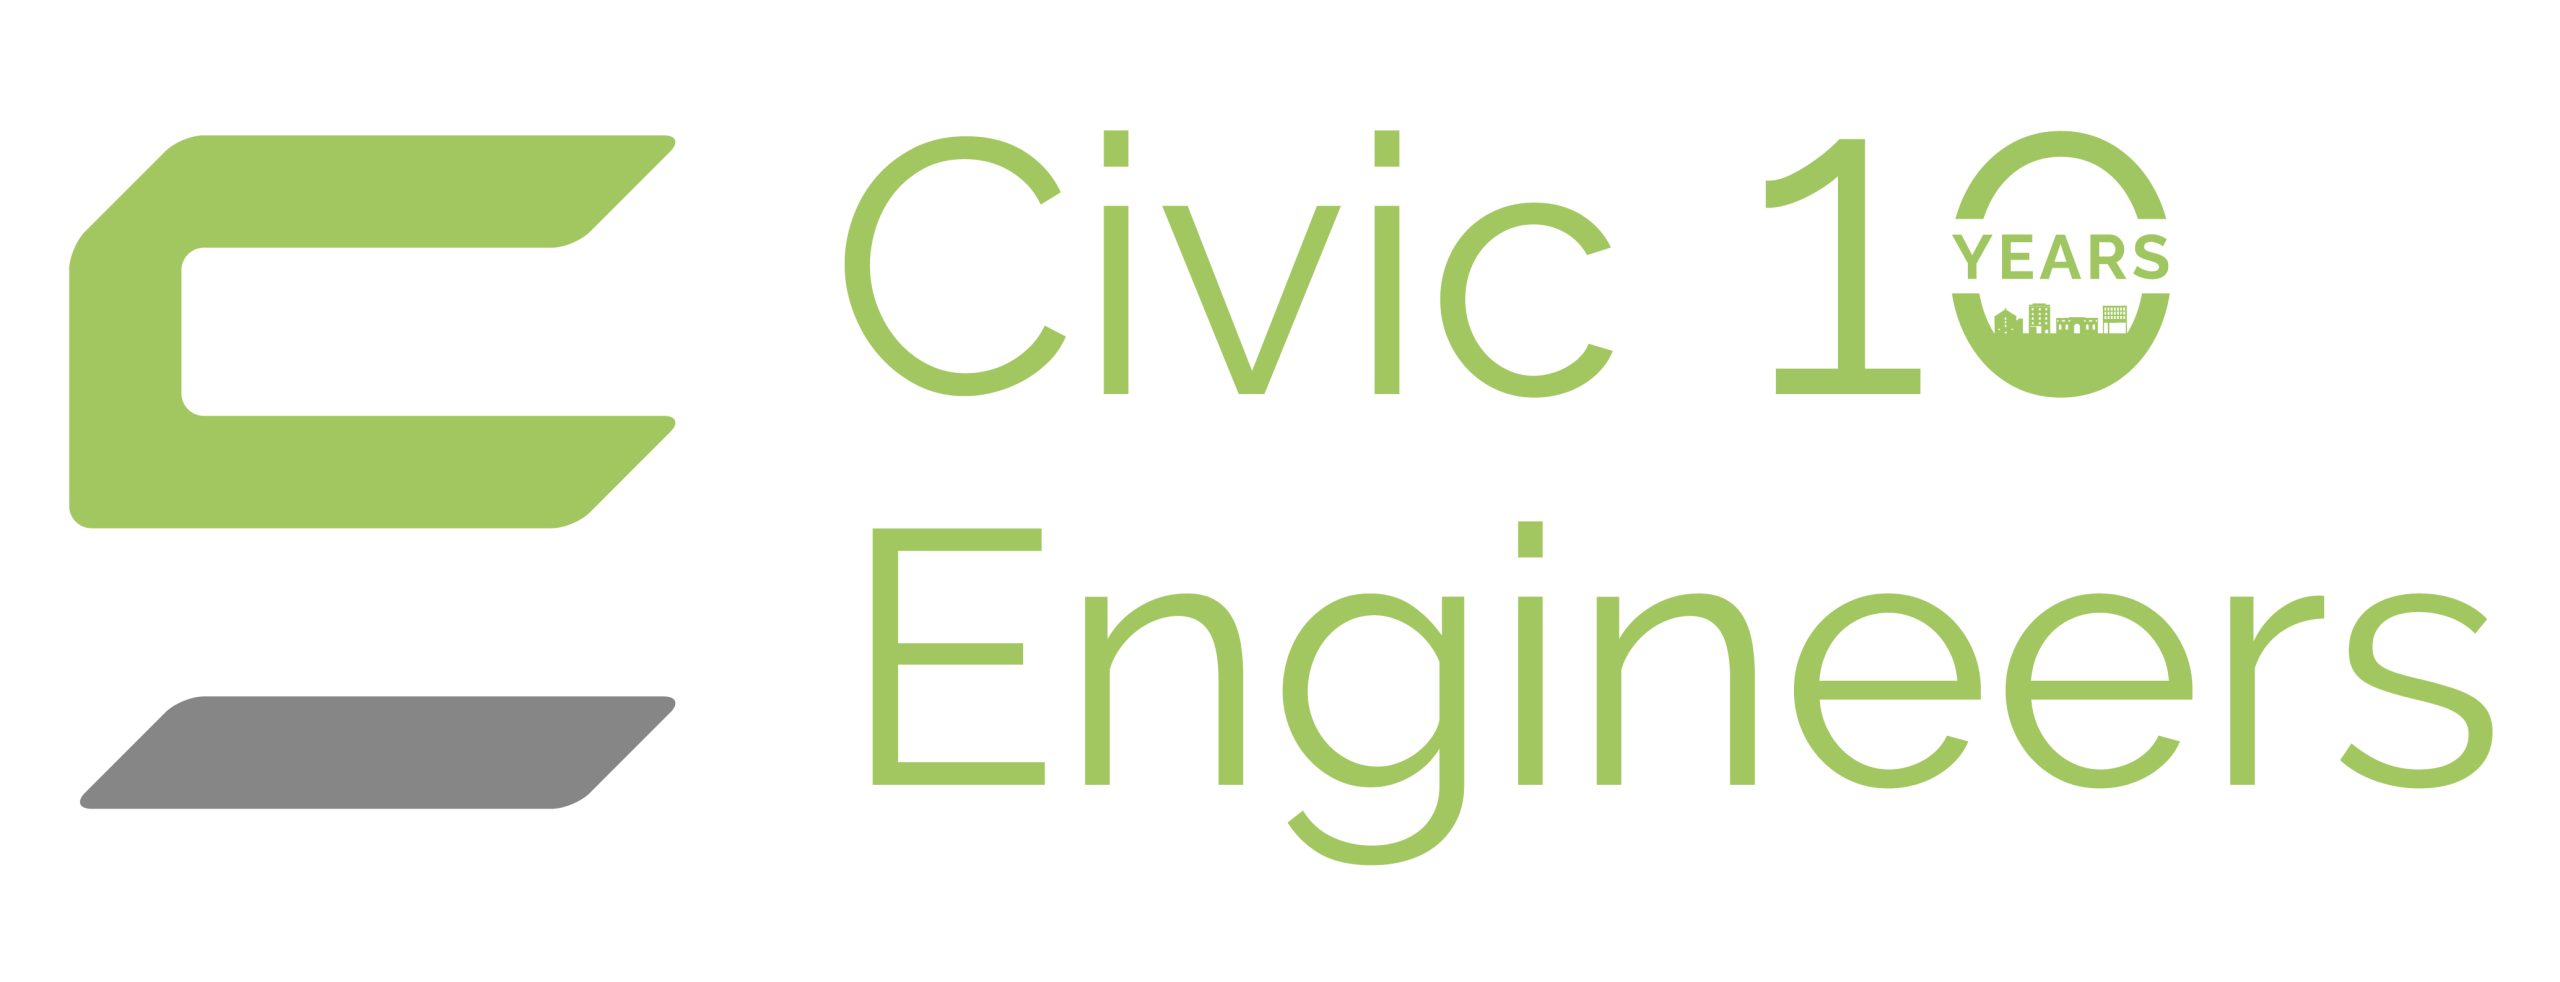 Civic Engineers - 10 Years